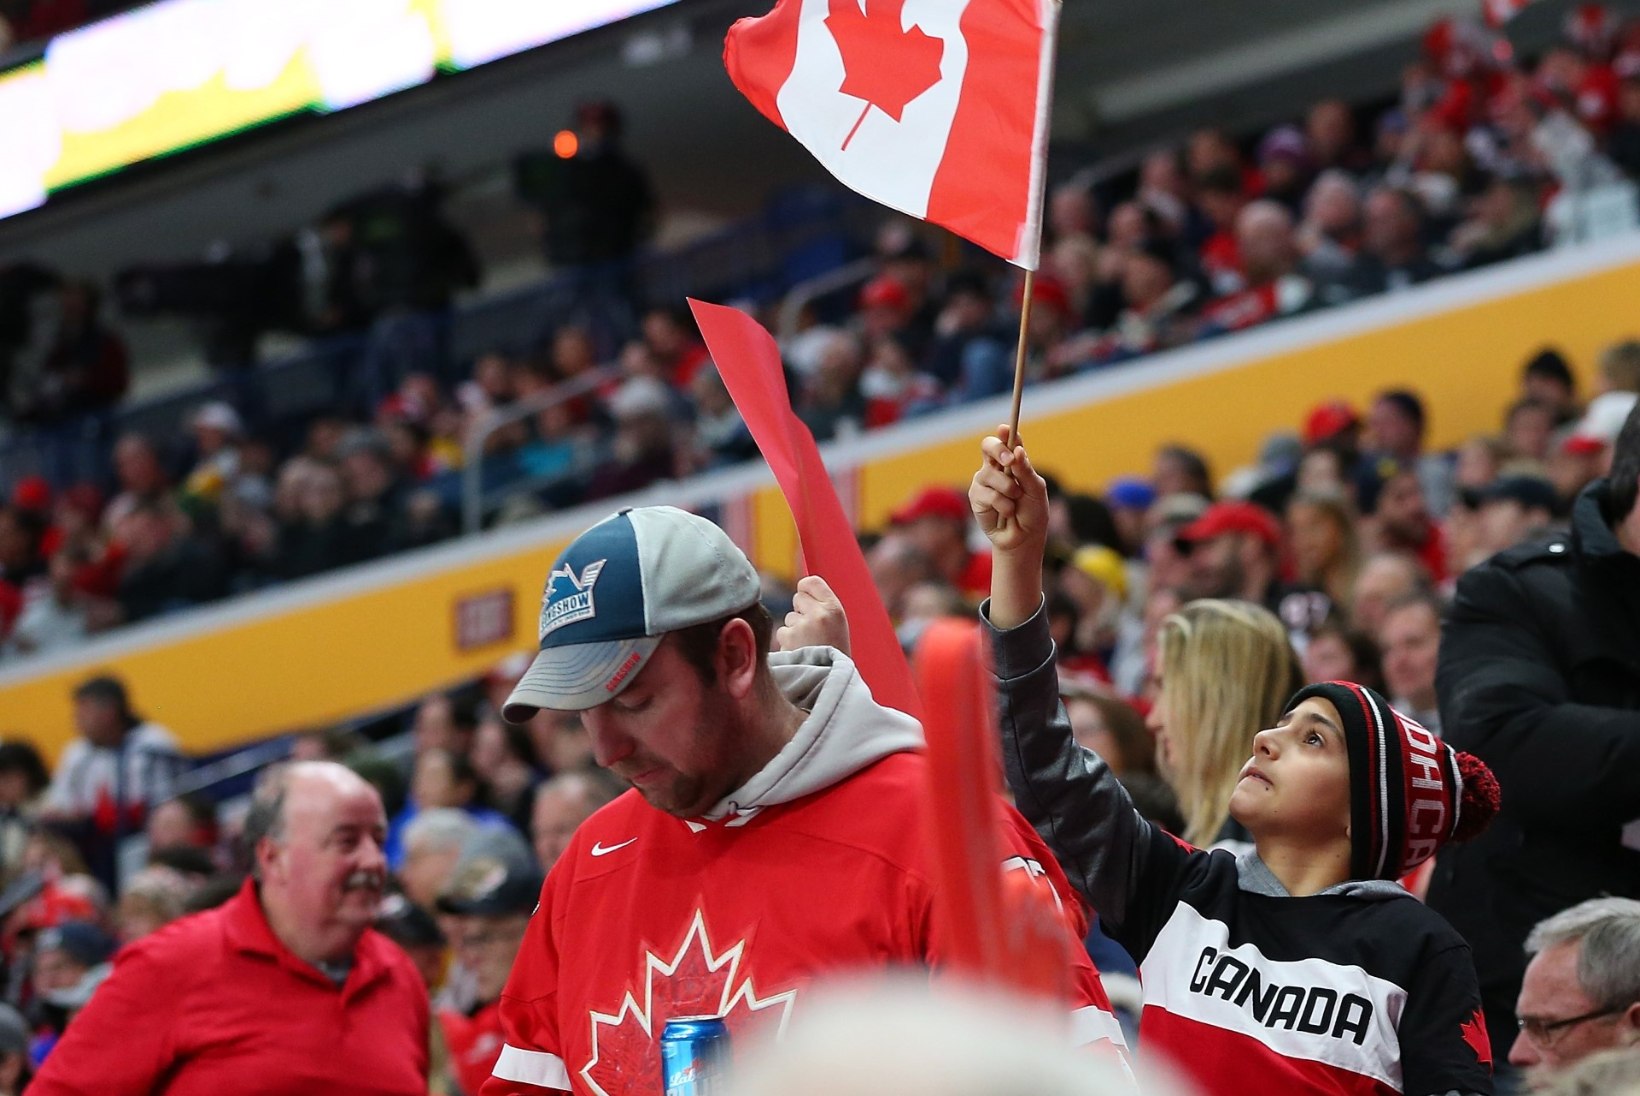 Kanada saadab olümpiale hokimeeskonna, mille liikmed on kokku pidanud NHLis üle 5500 mängu